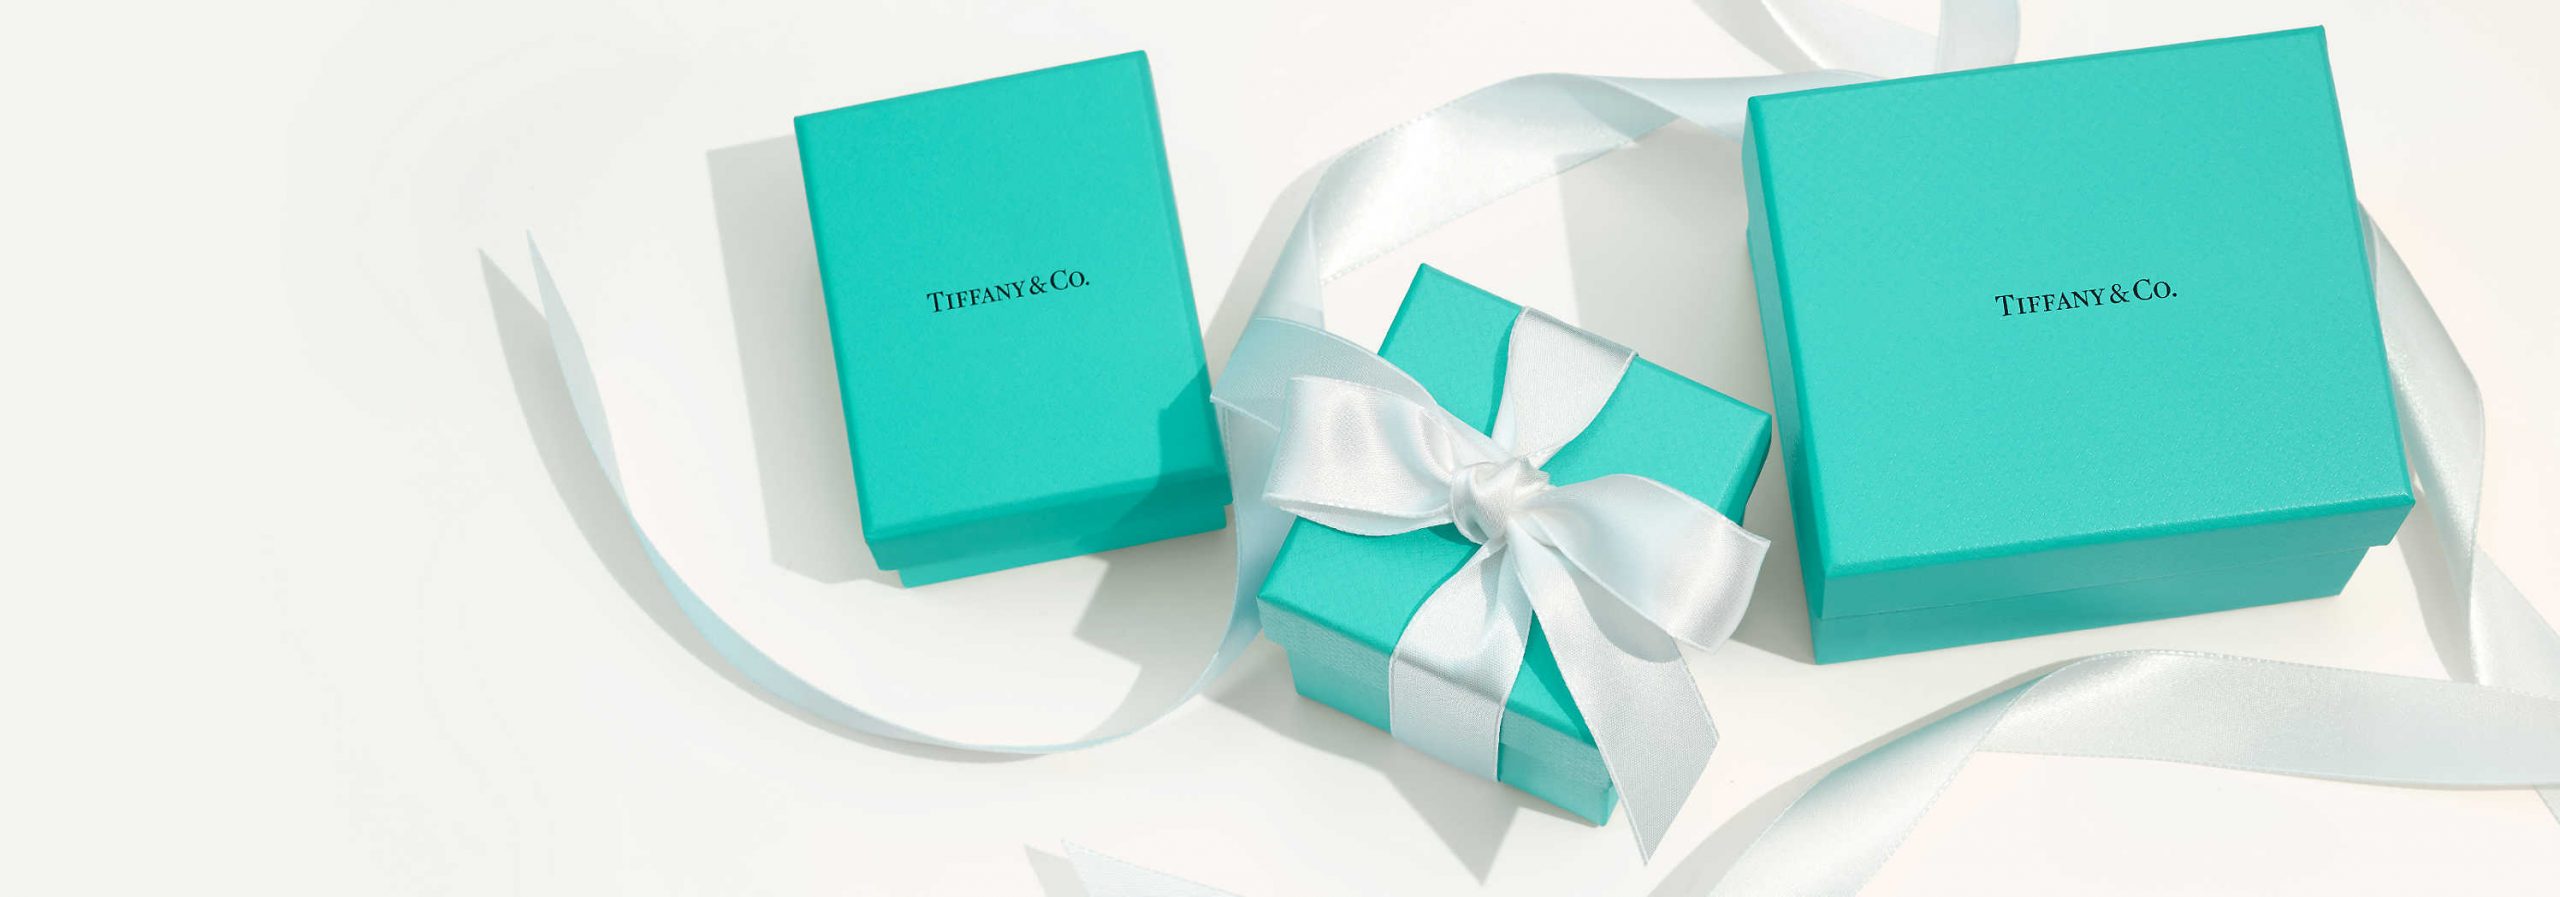 Tiffany & Co., LVMH Group